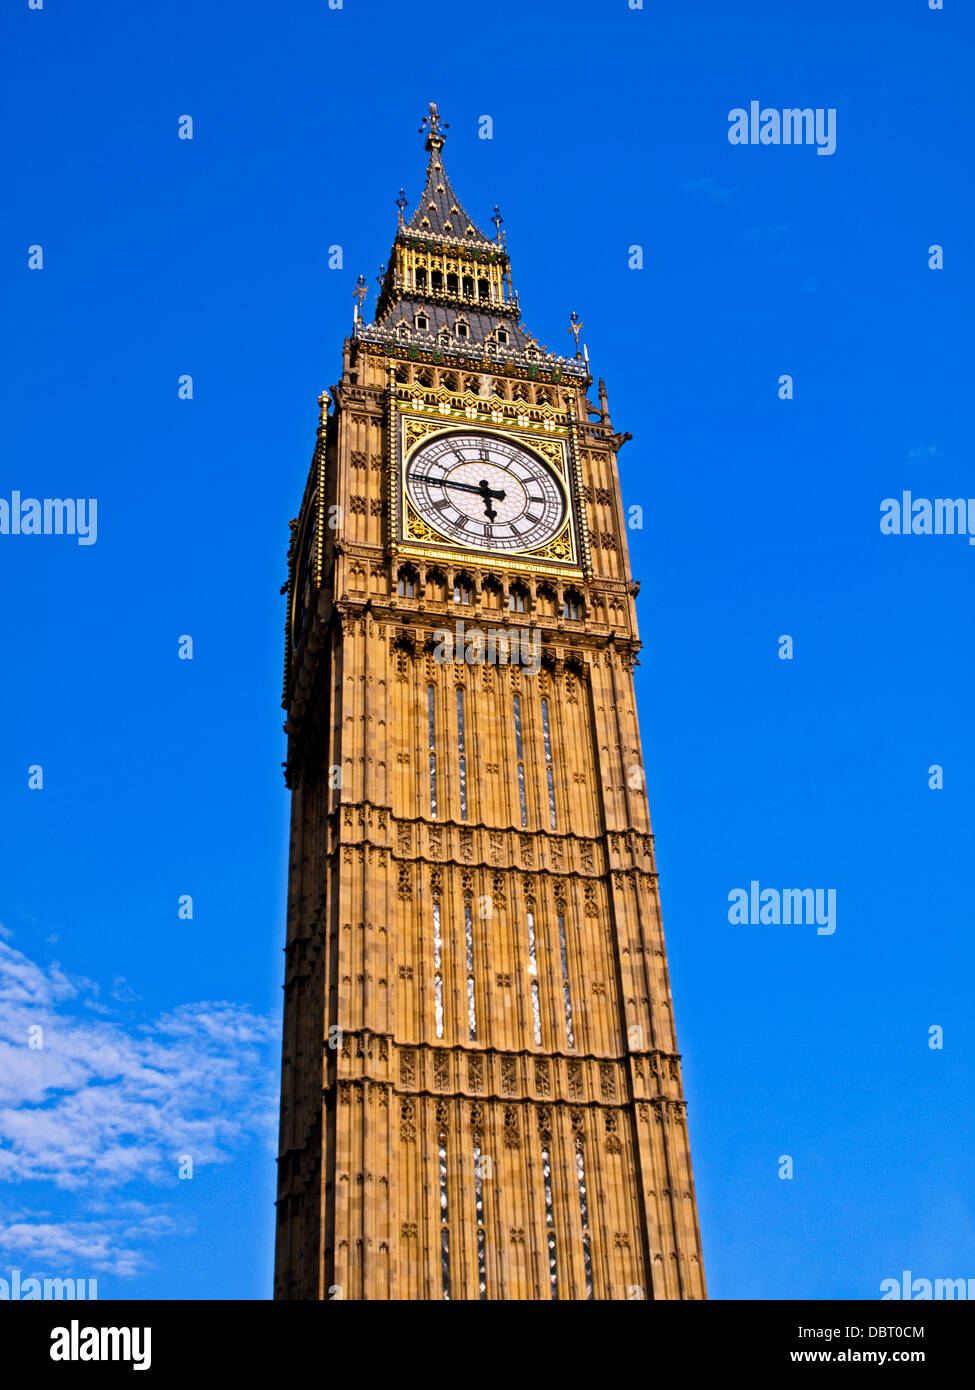 Vue de Big Ben, situé à l'extrémité nord du Palais de Westminster (Parlement), City of Westminster Banque D'Images